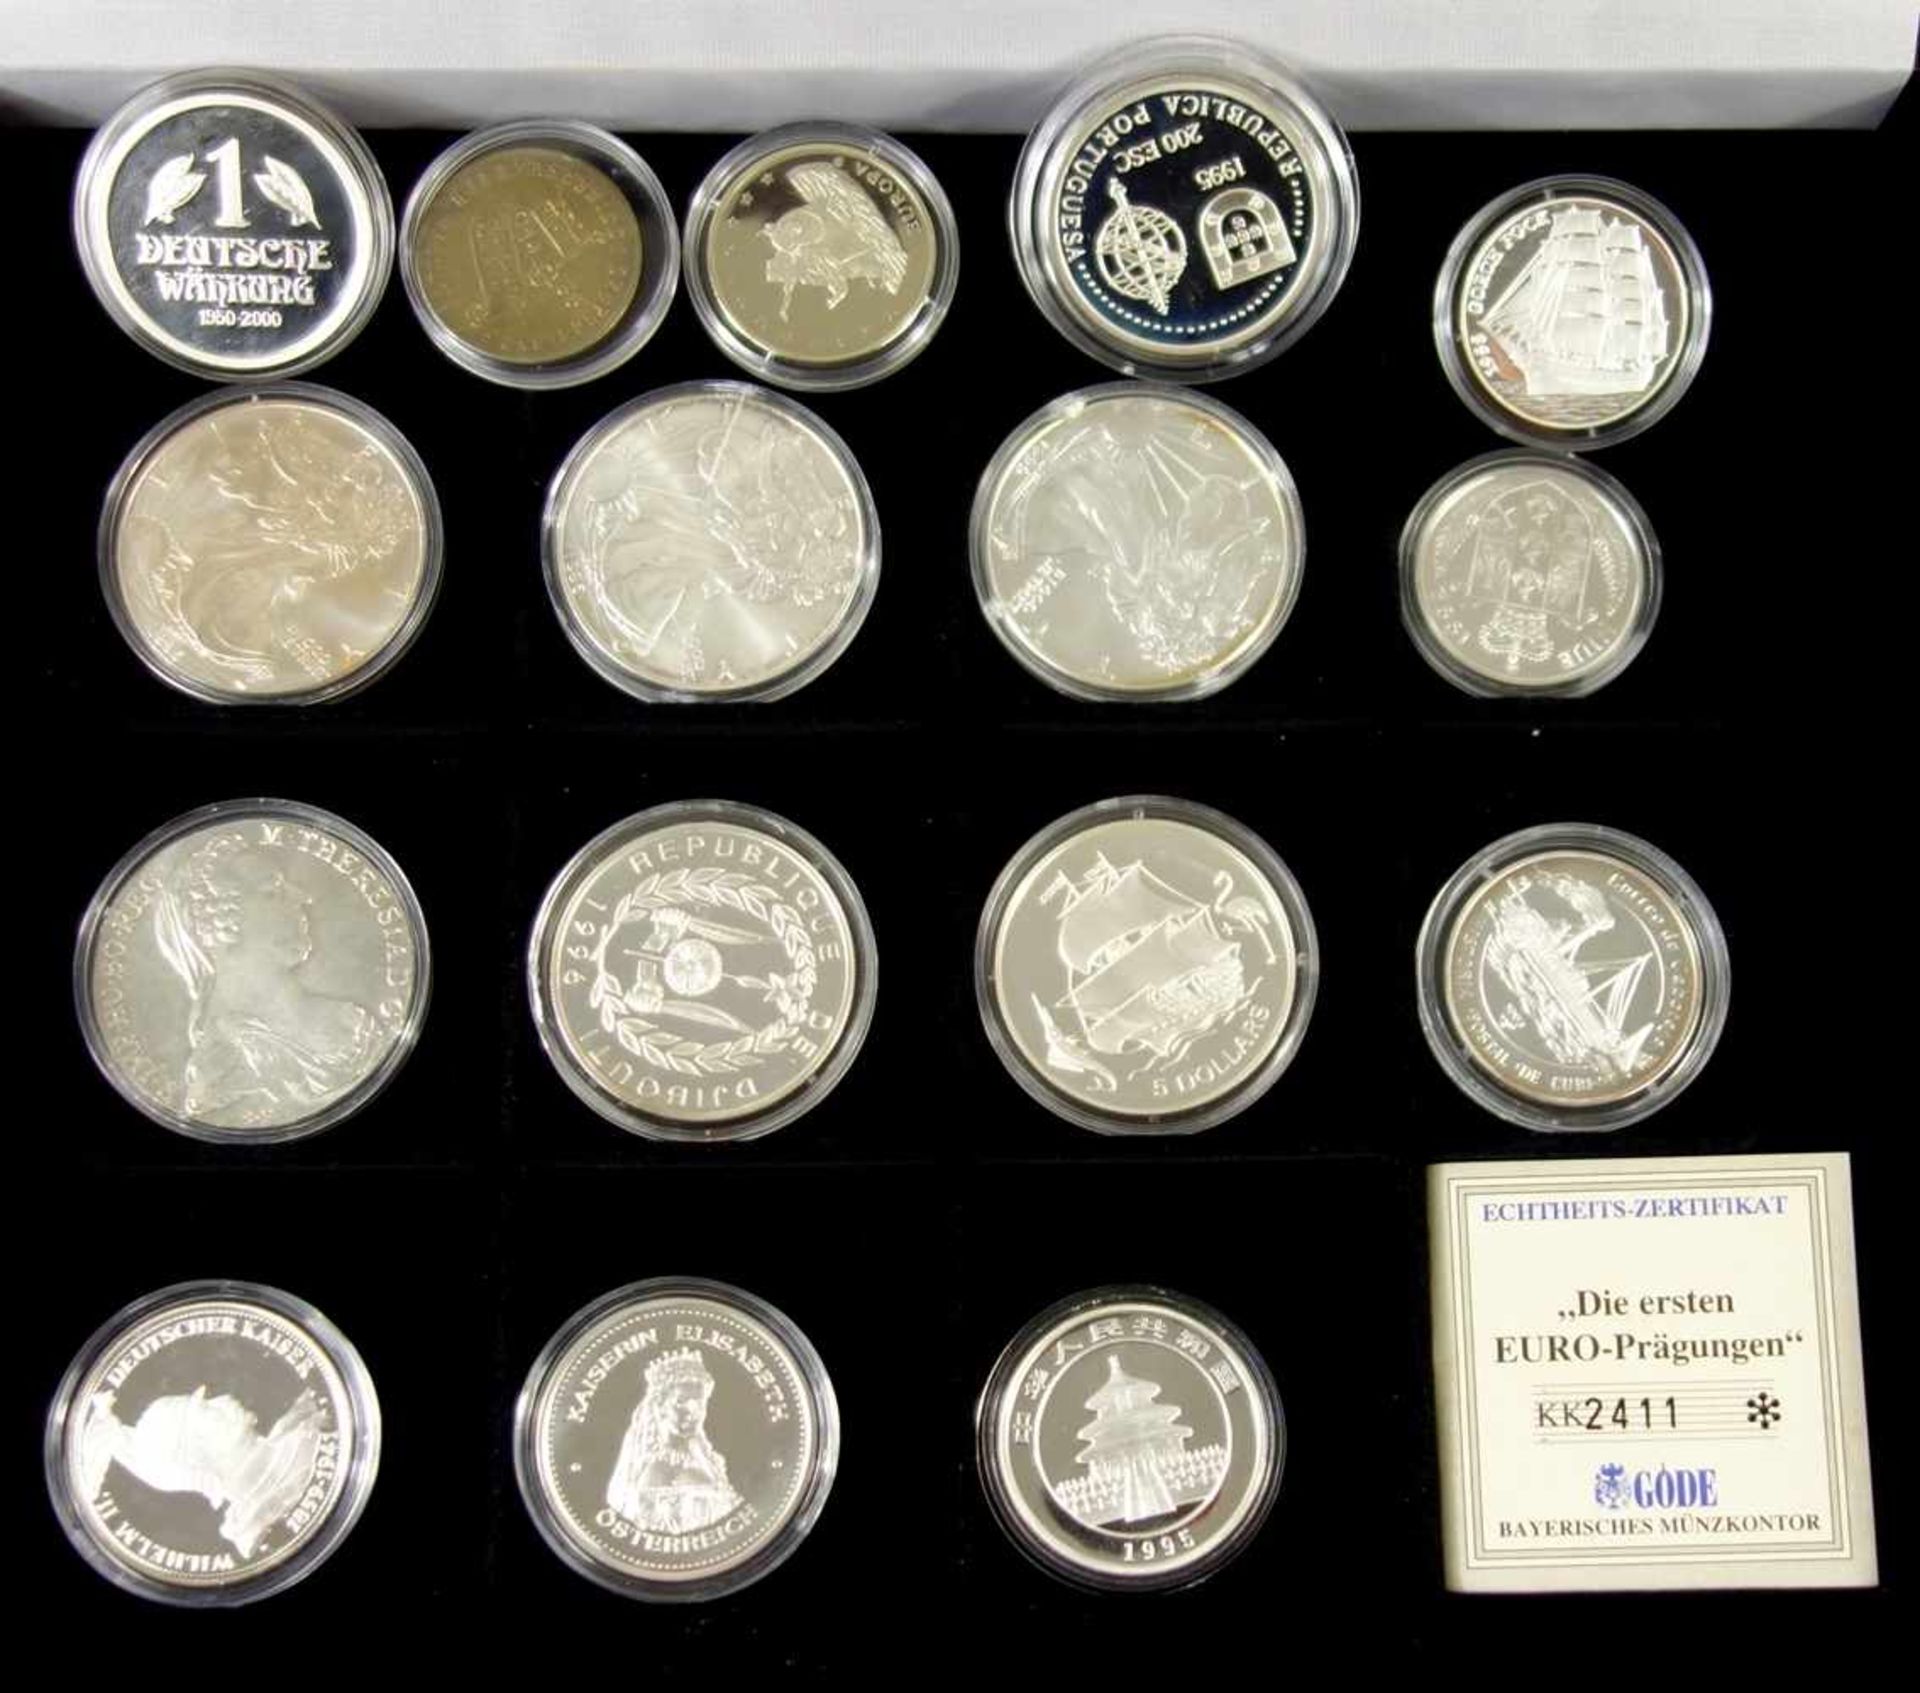 14 Gedenkprägungen, min. 250g, 925er Silber, u.a. 3 Silber-Dollar 1996 und 1999, Konventionstaler